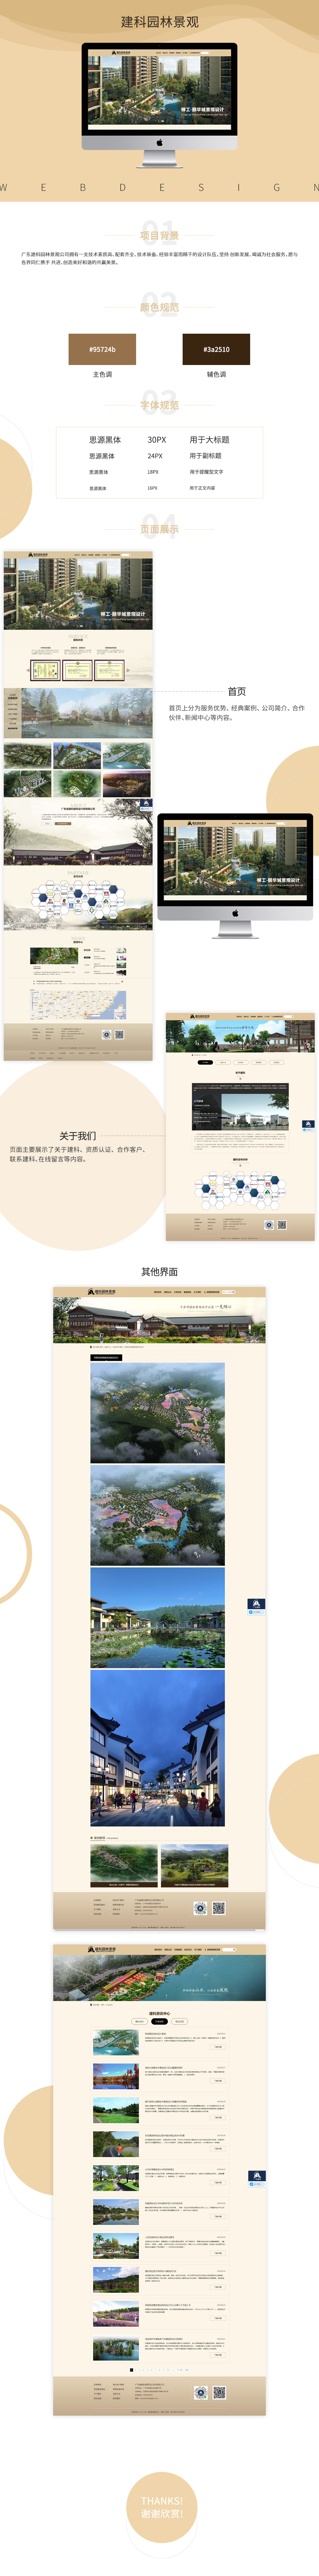 广东省建科建筑设计院有限公司网站案例